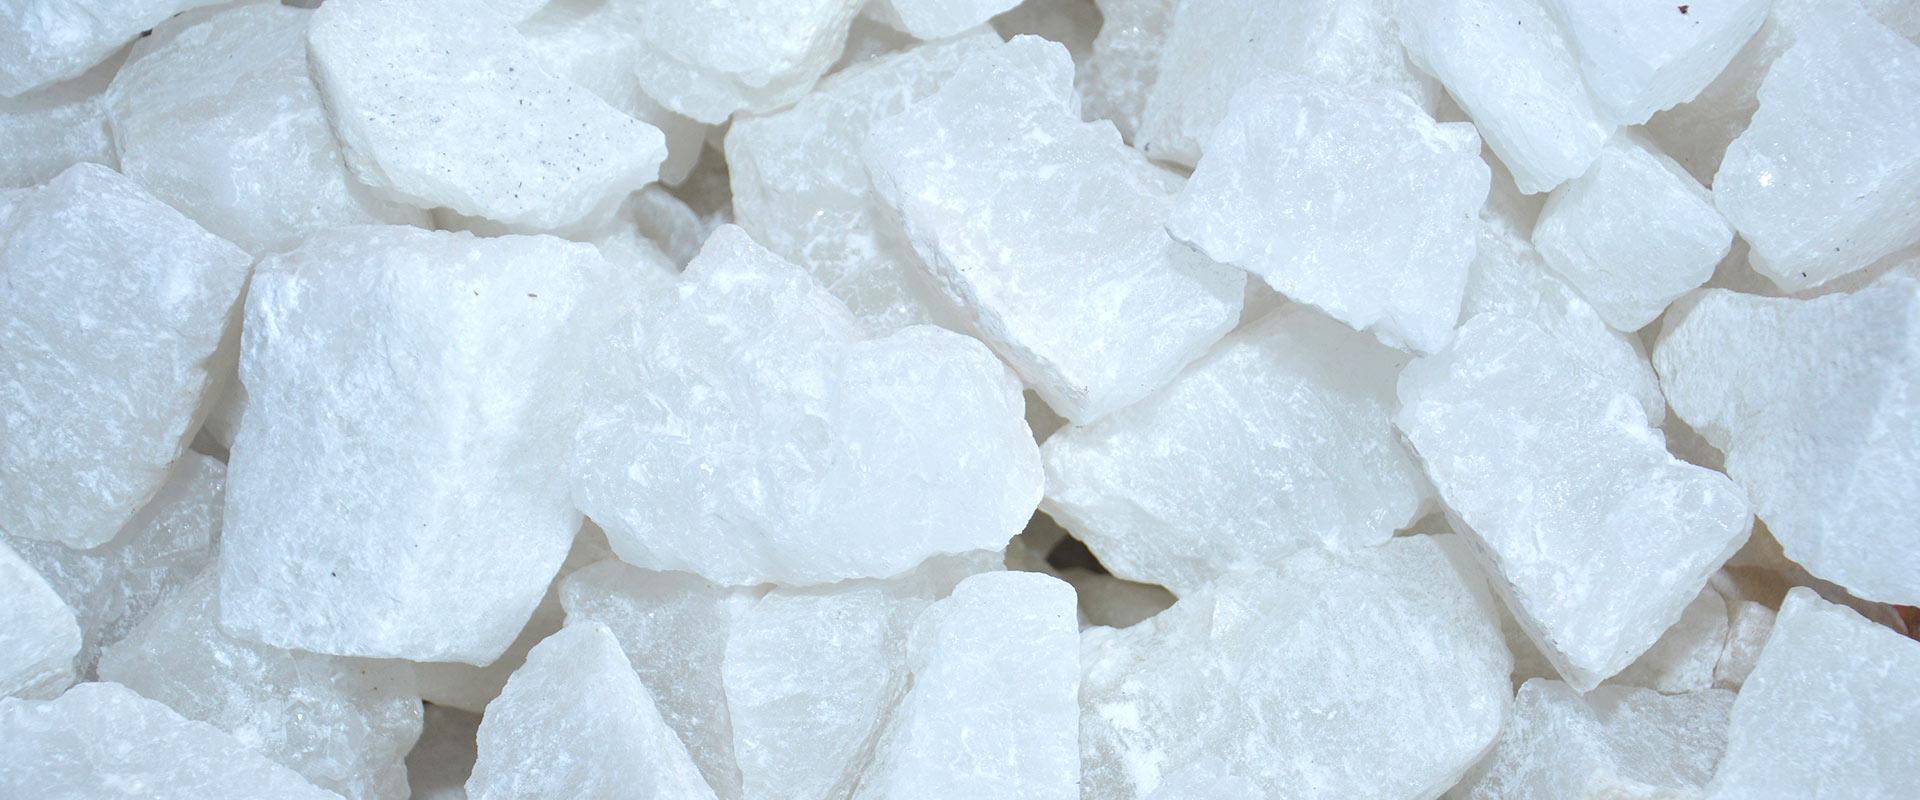 Что такое соли алюминия?